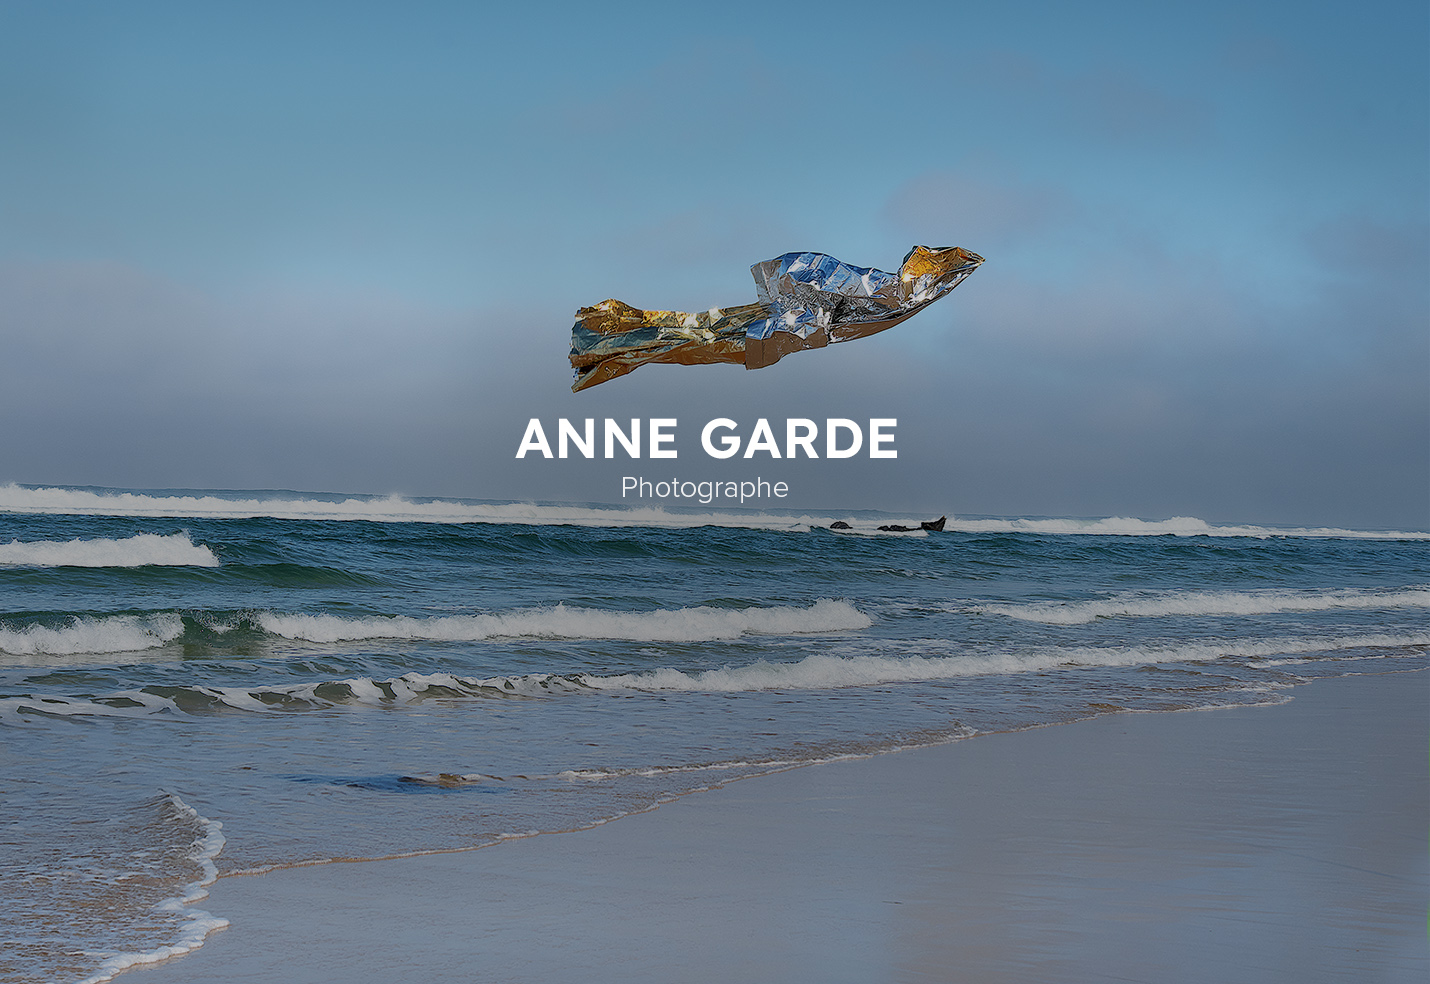 Anne Garde new 2022 website